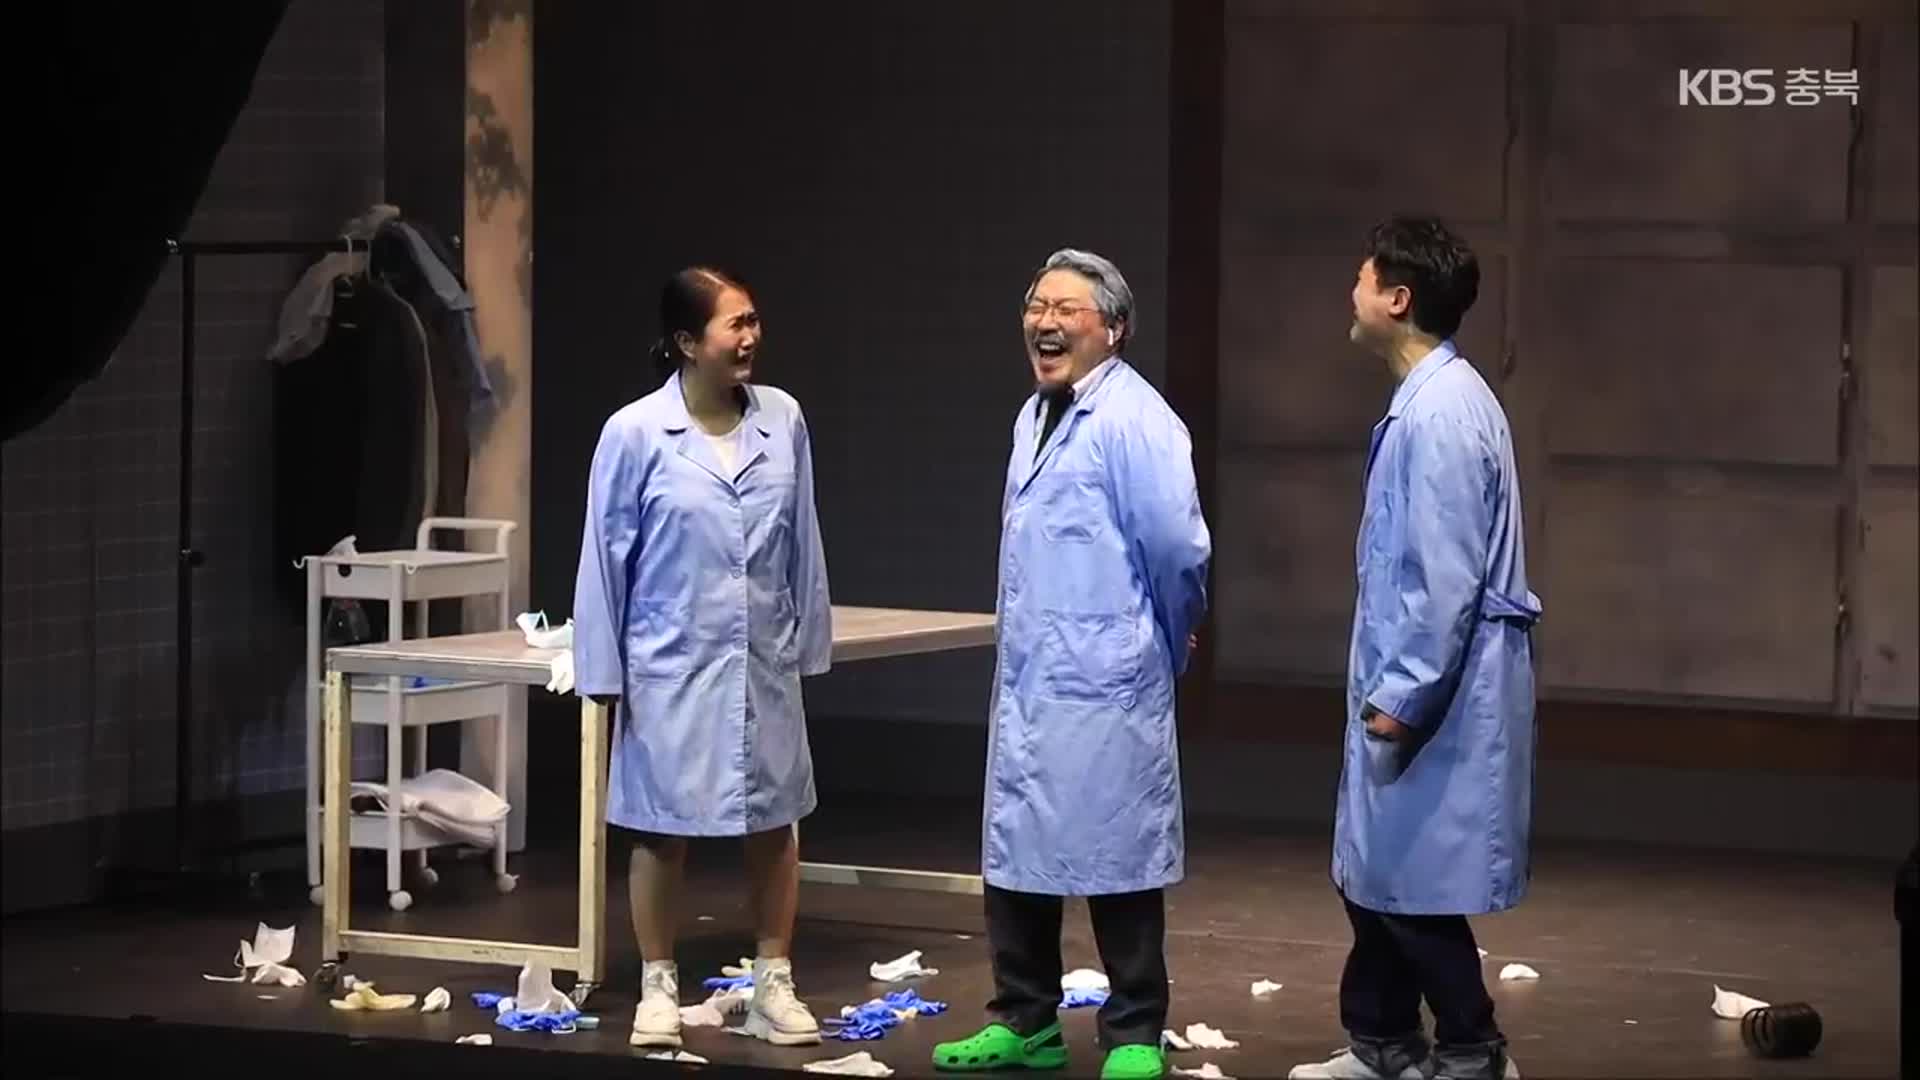 [화제현장 이곳] 대한민국 연극제 무대에 오른 충북 ‘청년극장’